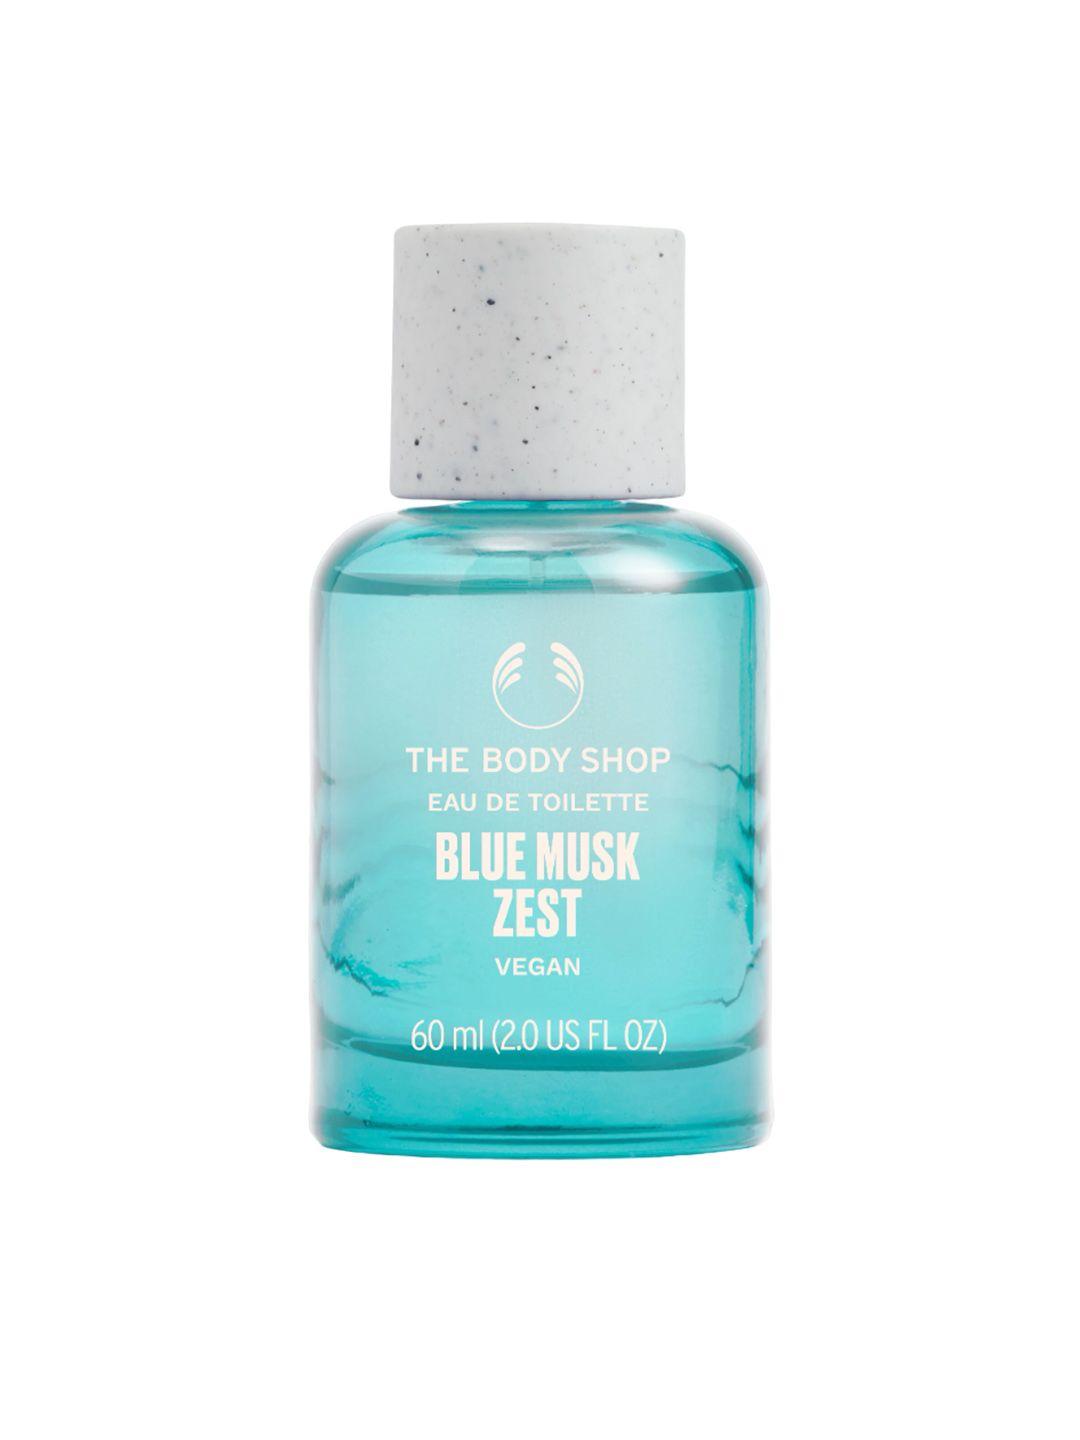 the body shop blue musk zest long lasting vegan eau de toilette - 60 ml